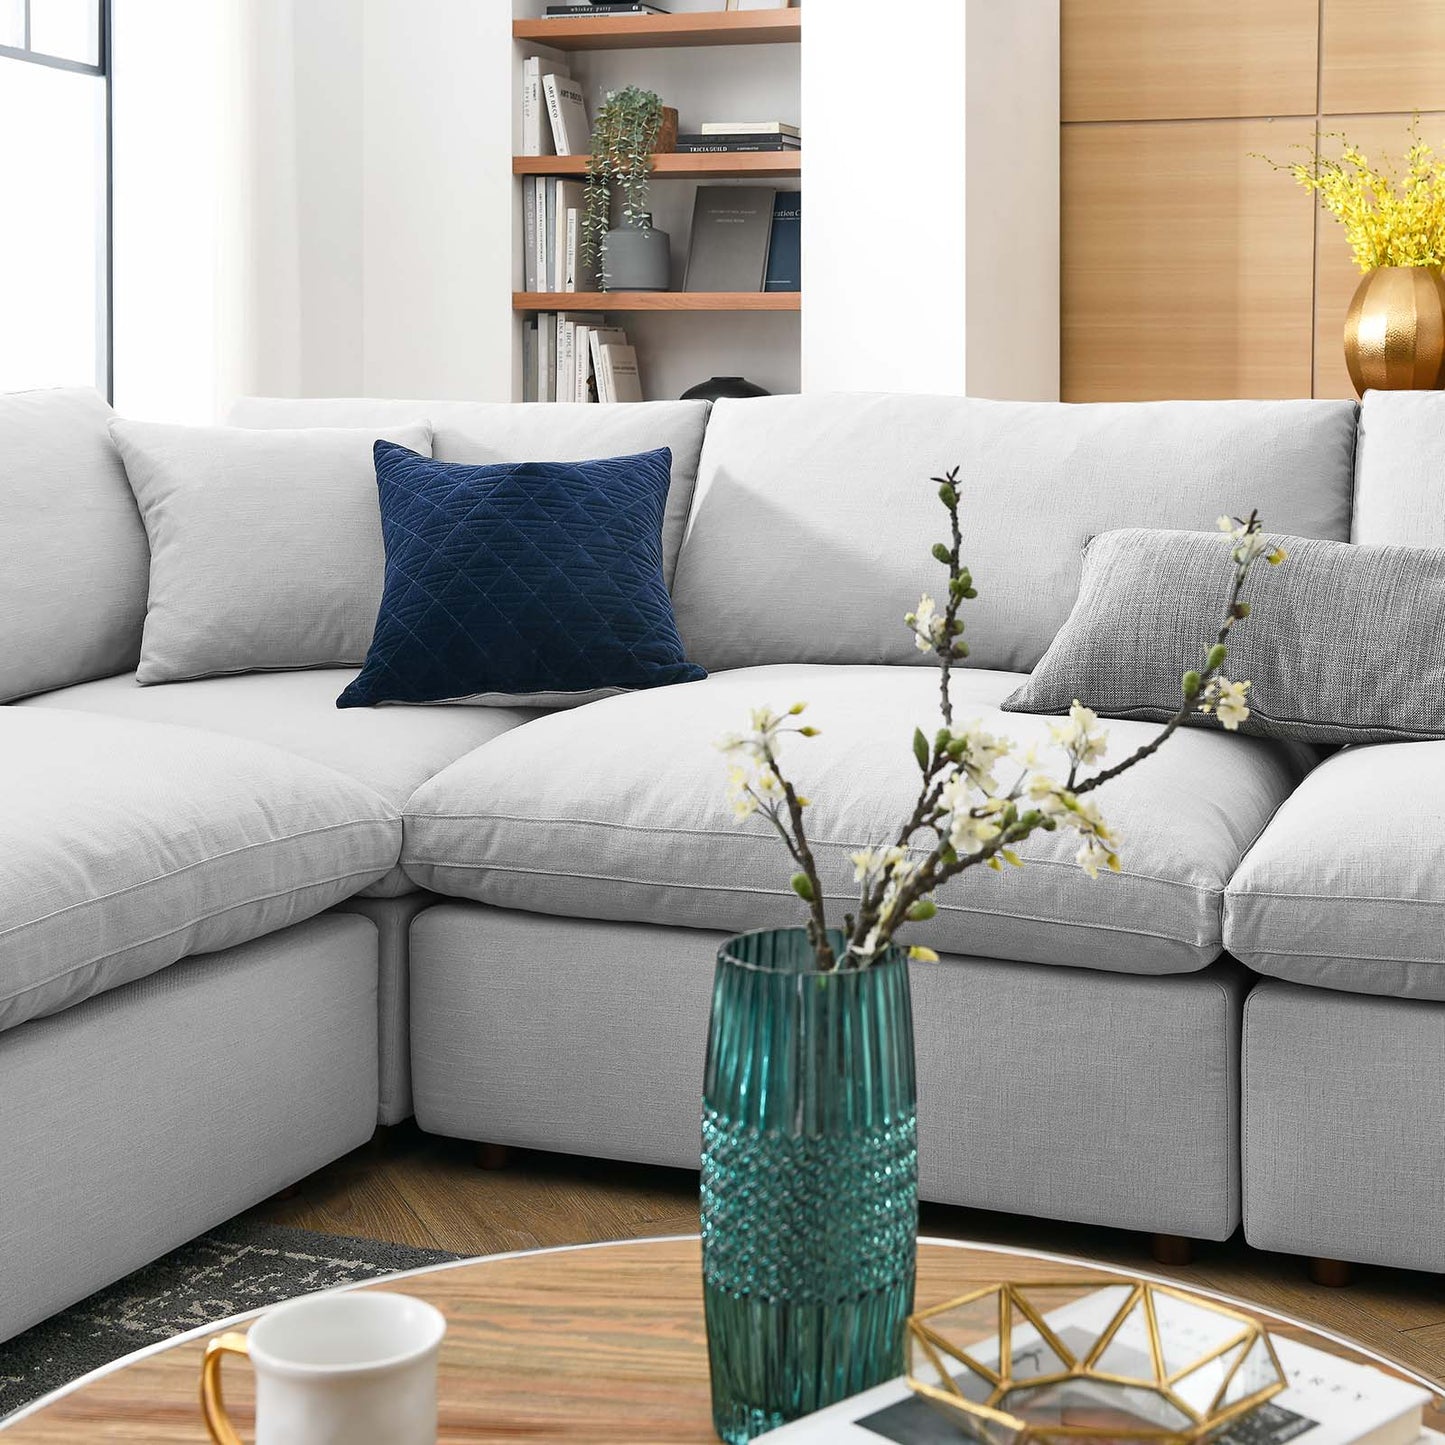 Commix Down Filled Overstuffed 8-Piece Sectional Sofa Light Gray EEI-3363-LGR